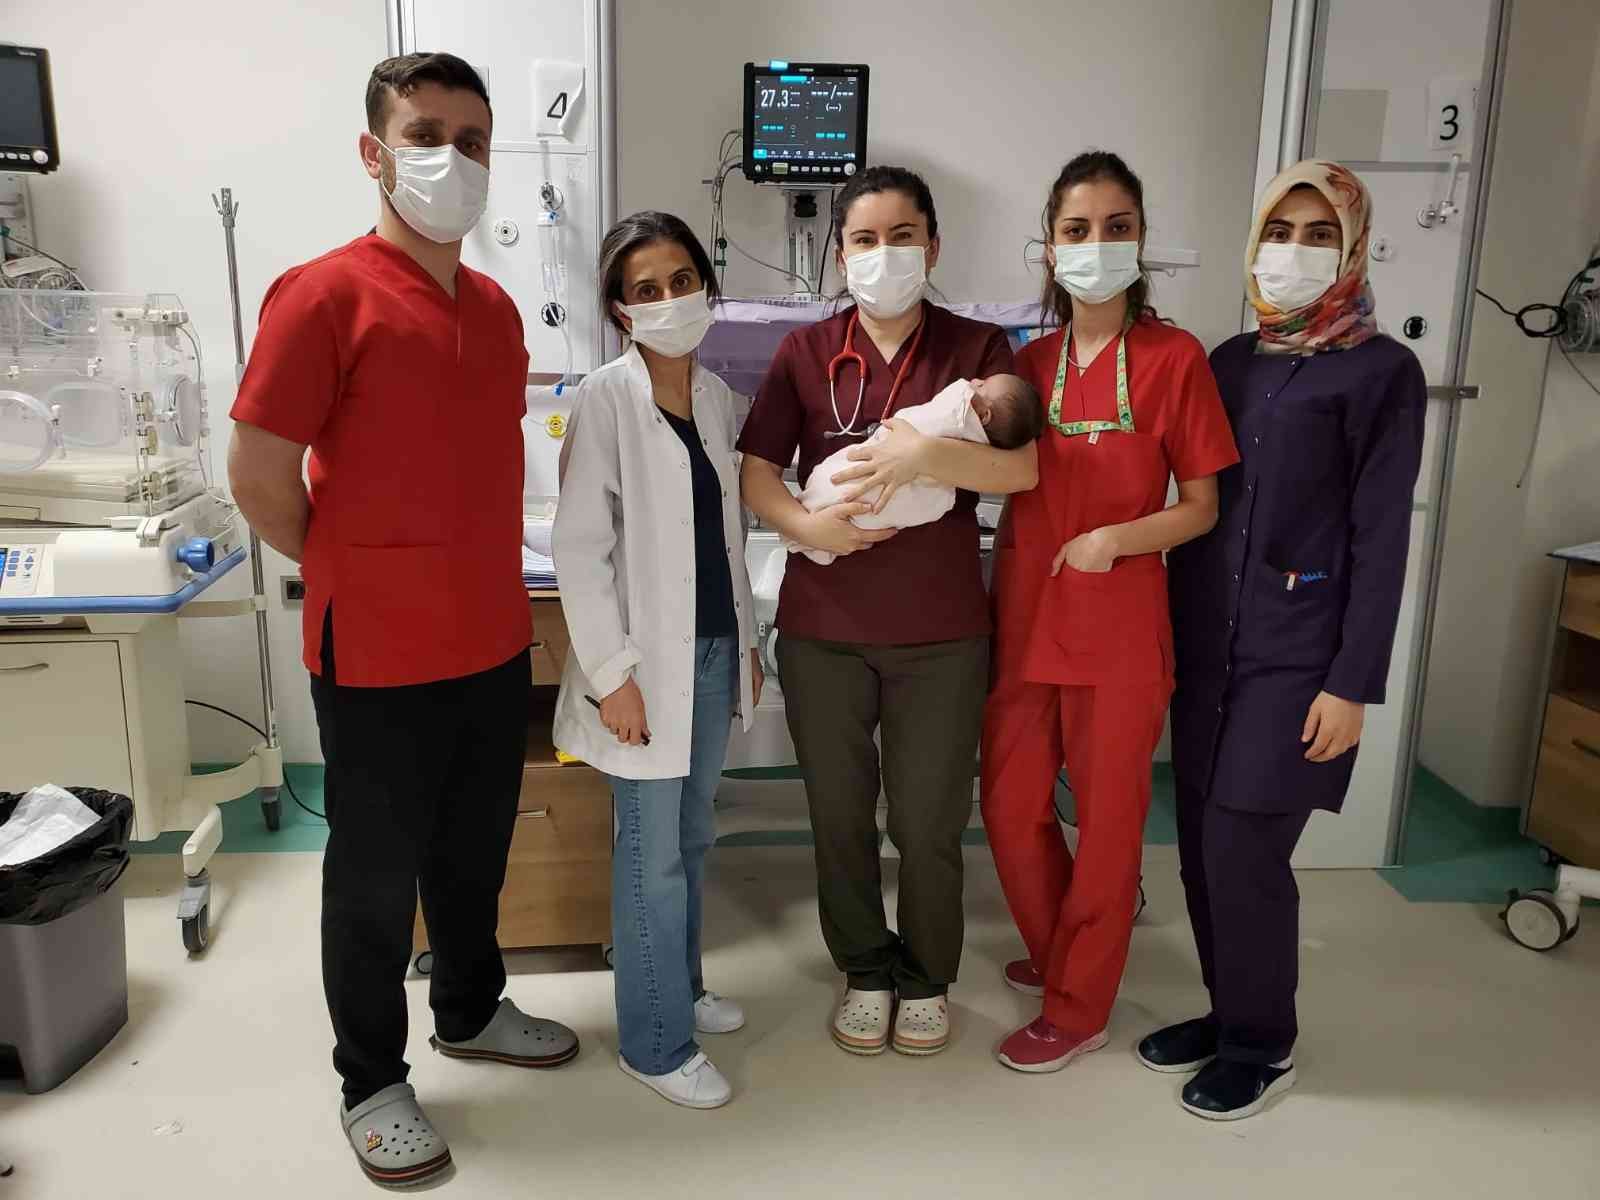 Covid-19 hastası bebek 14 günlük yaşam mücadelesini kazandı #batman